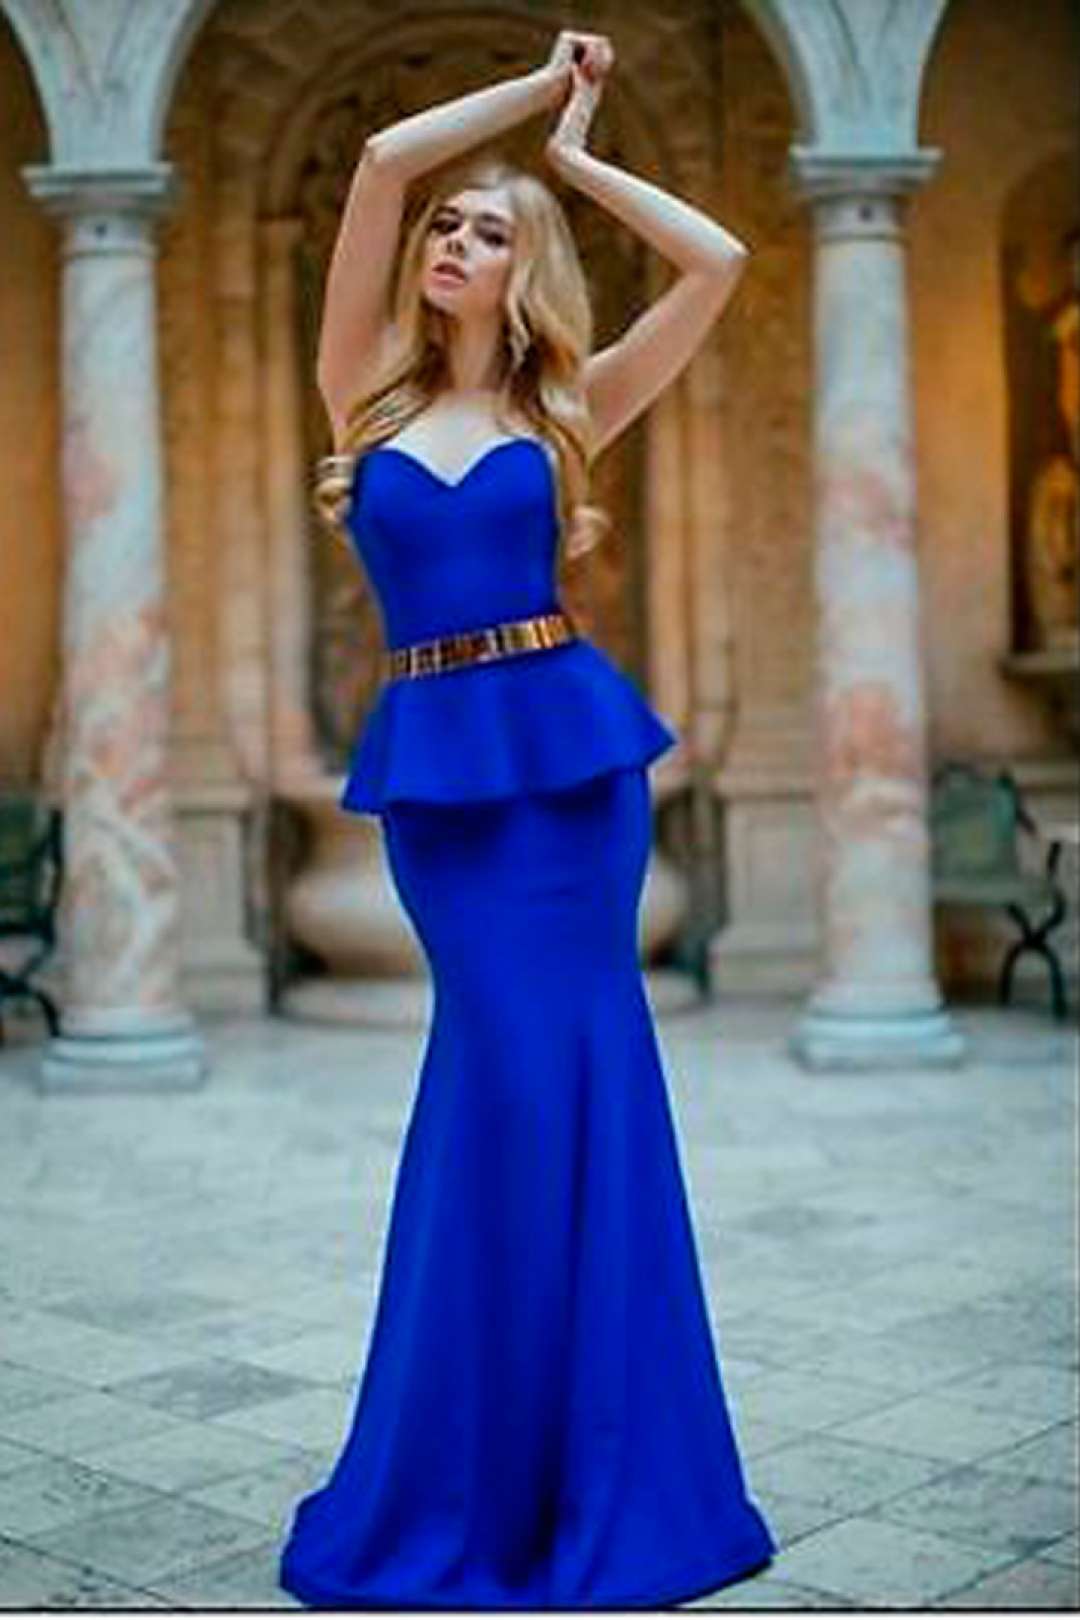 Платье с синим поясом